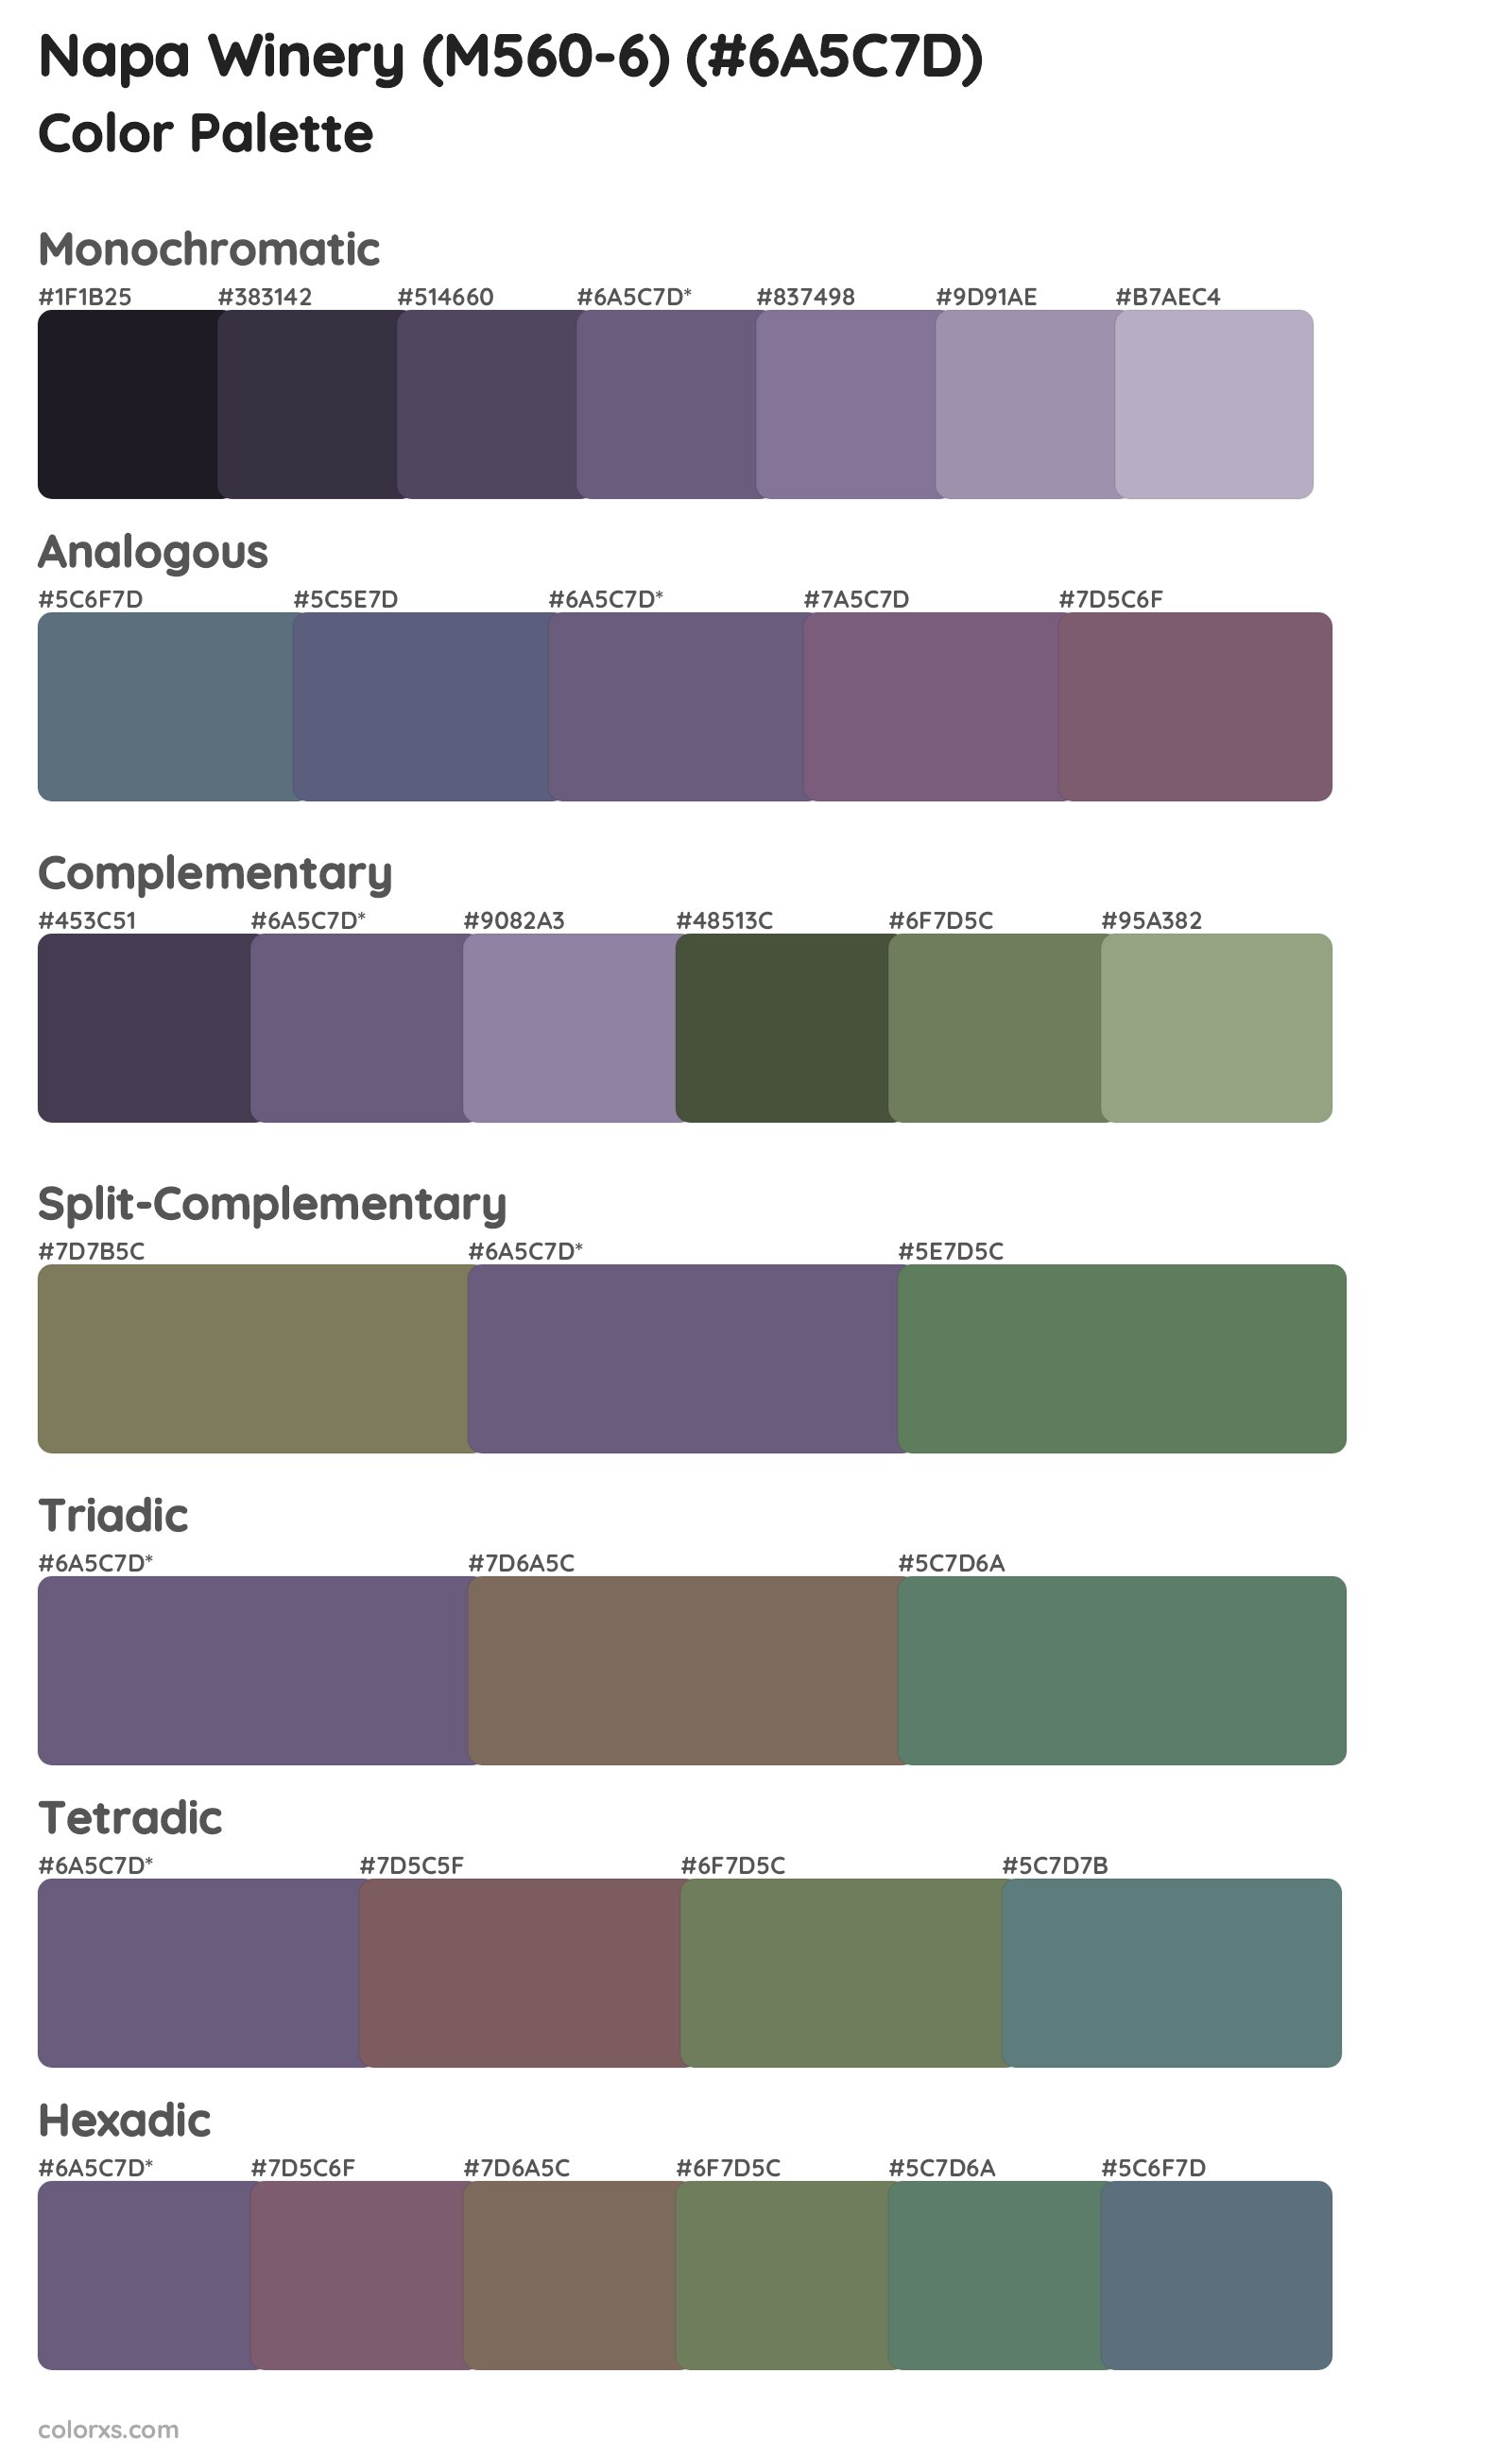 Napa Winery (M560-6) Color Scheme Palettes